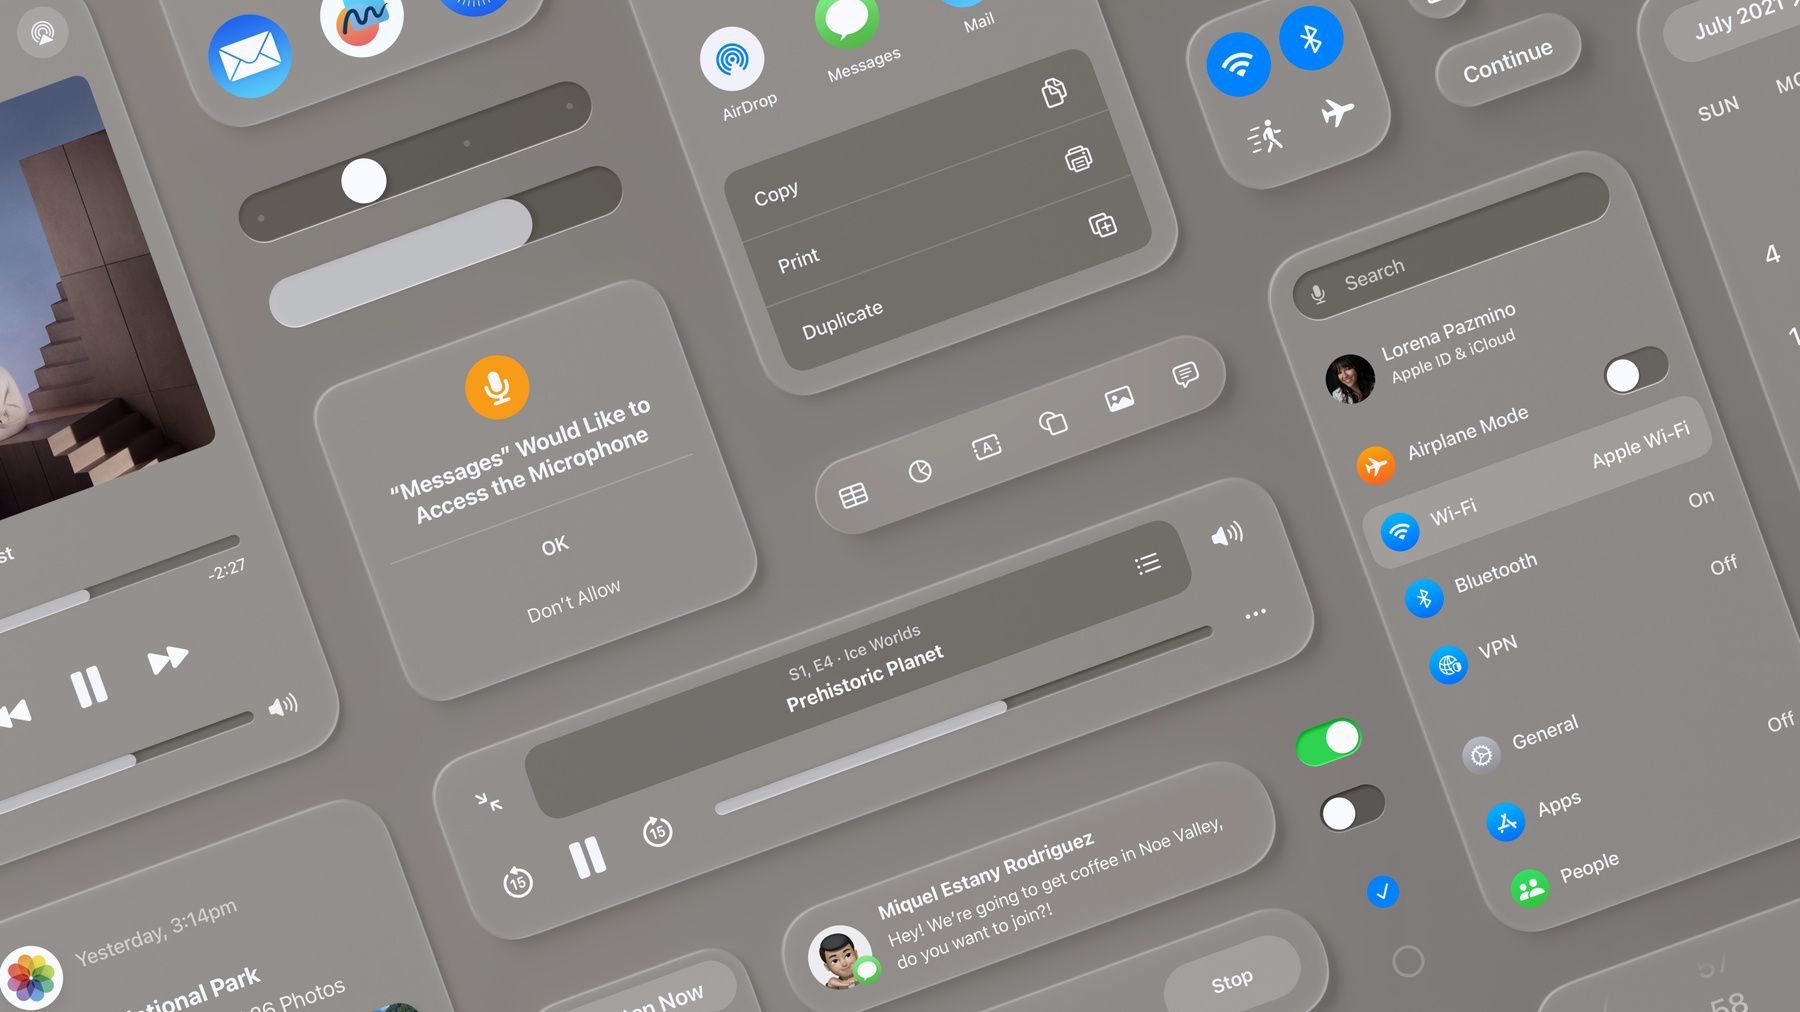 iOS 18’den yeni detaylar ortaya çıktı: Tasarım değişiyor